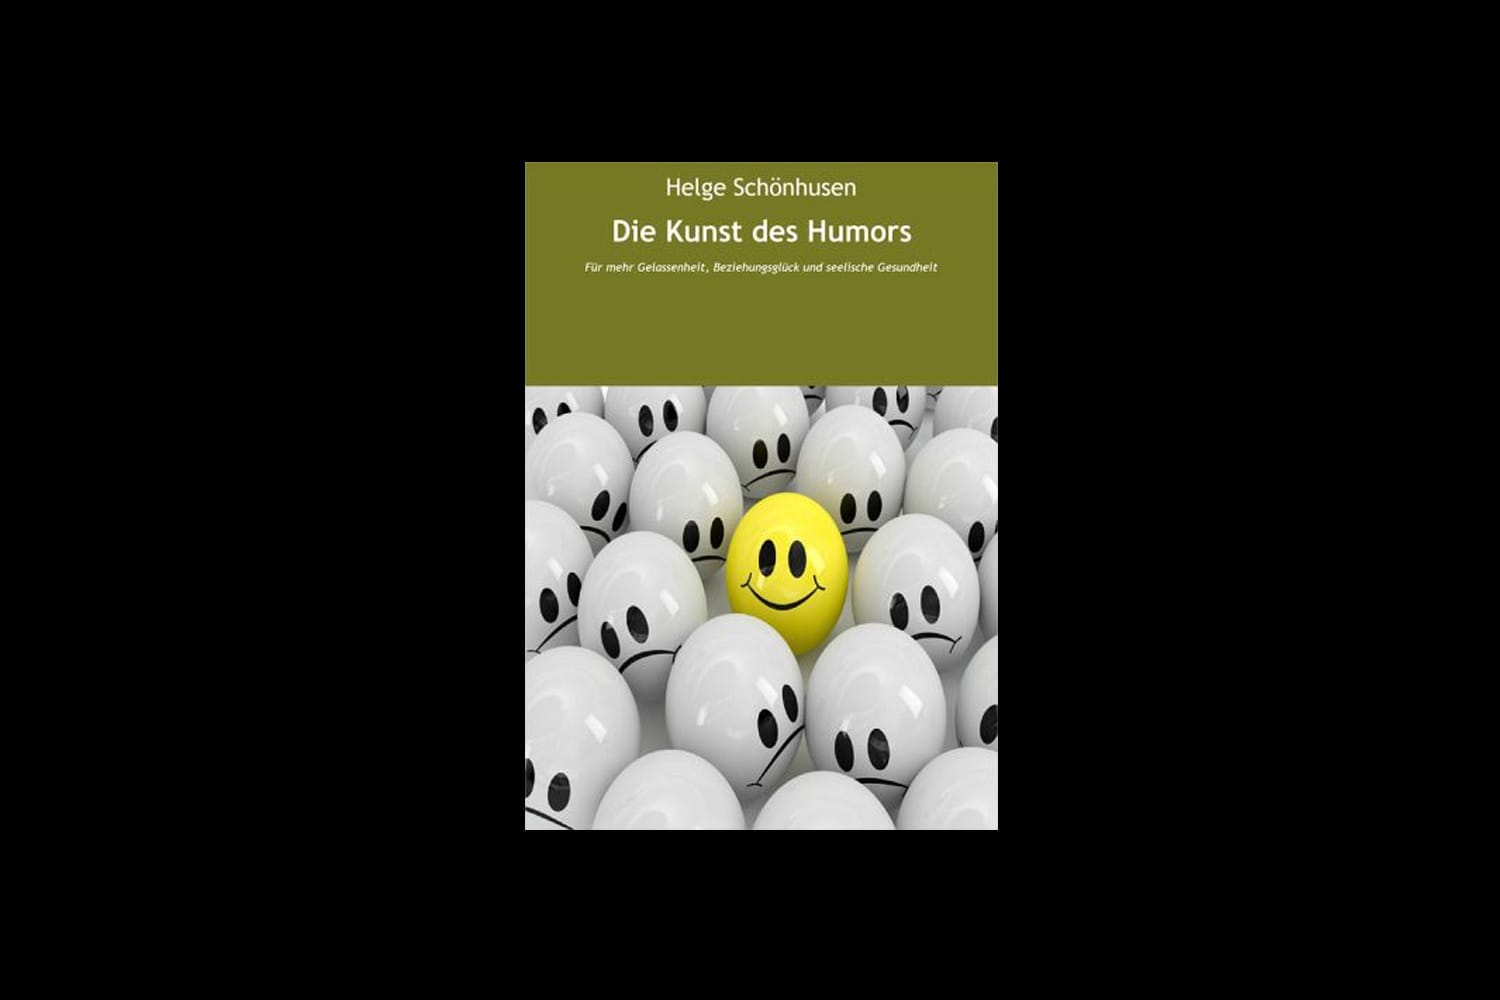 Humor erlernen: "Die Kunst des Humors: Für mehr Gelassenheit, Beziehungsglück und seelische Gesundheit (Eine Formel fürs Leben)" von Helge Schönhusen kostet als E-Book 3,99 Euro (bei buecher.de).